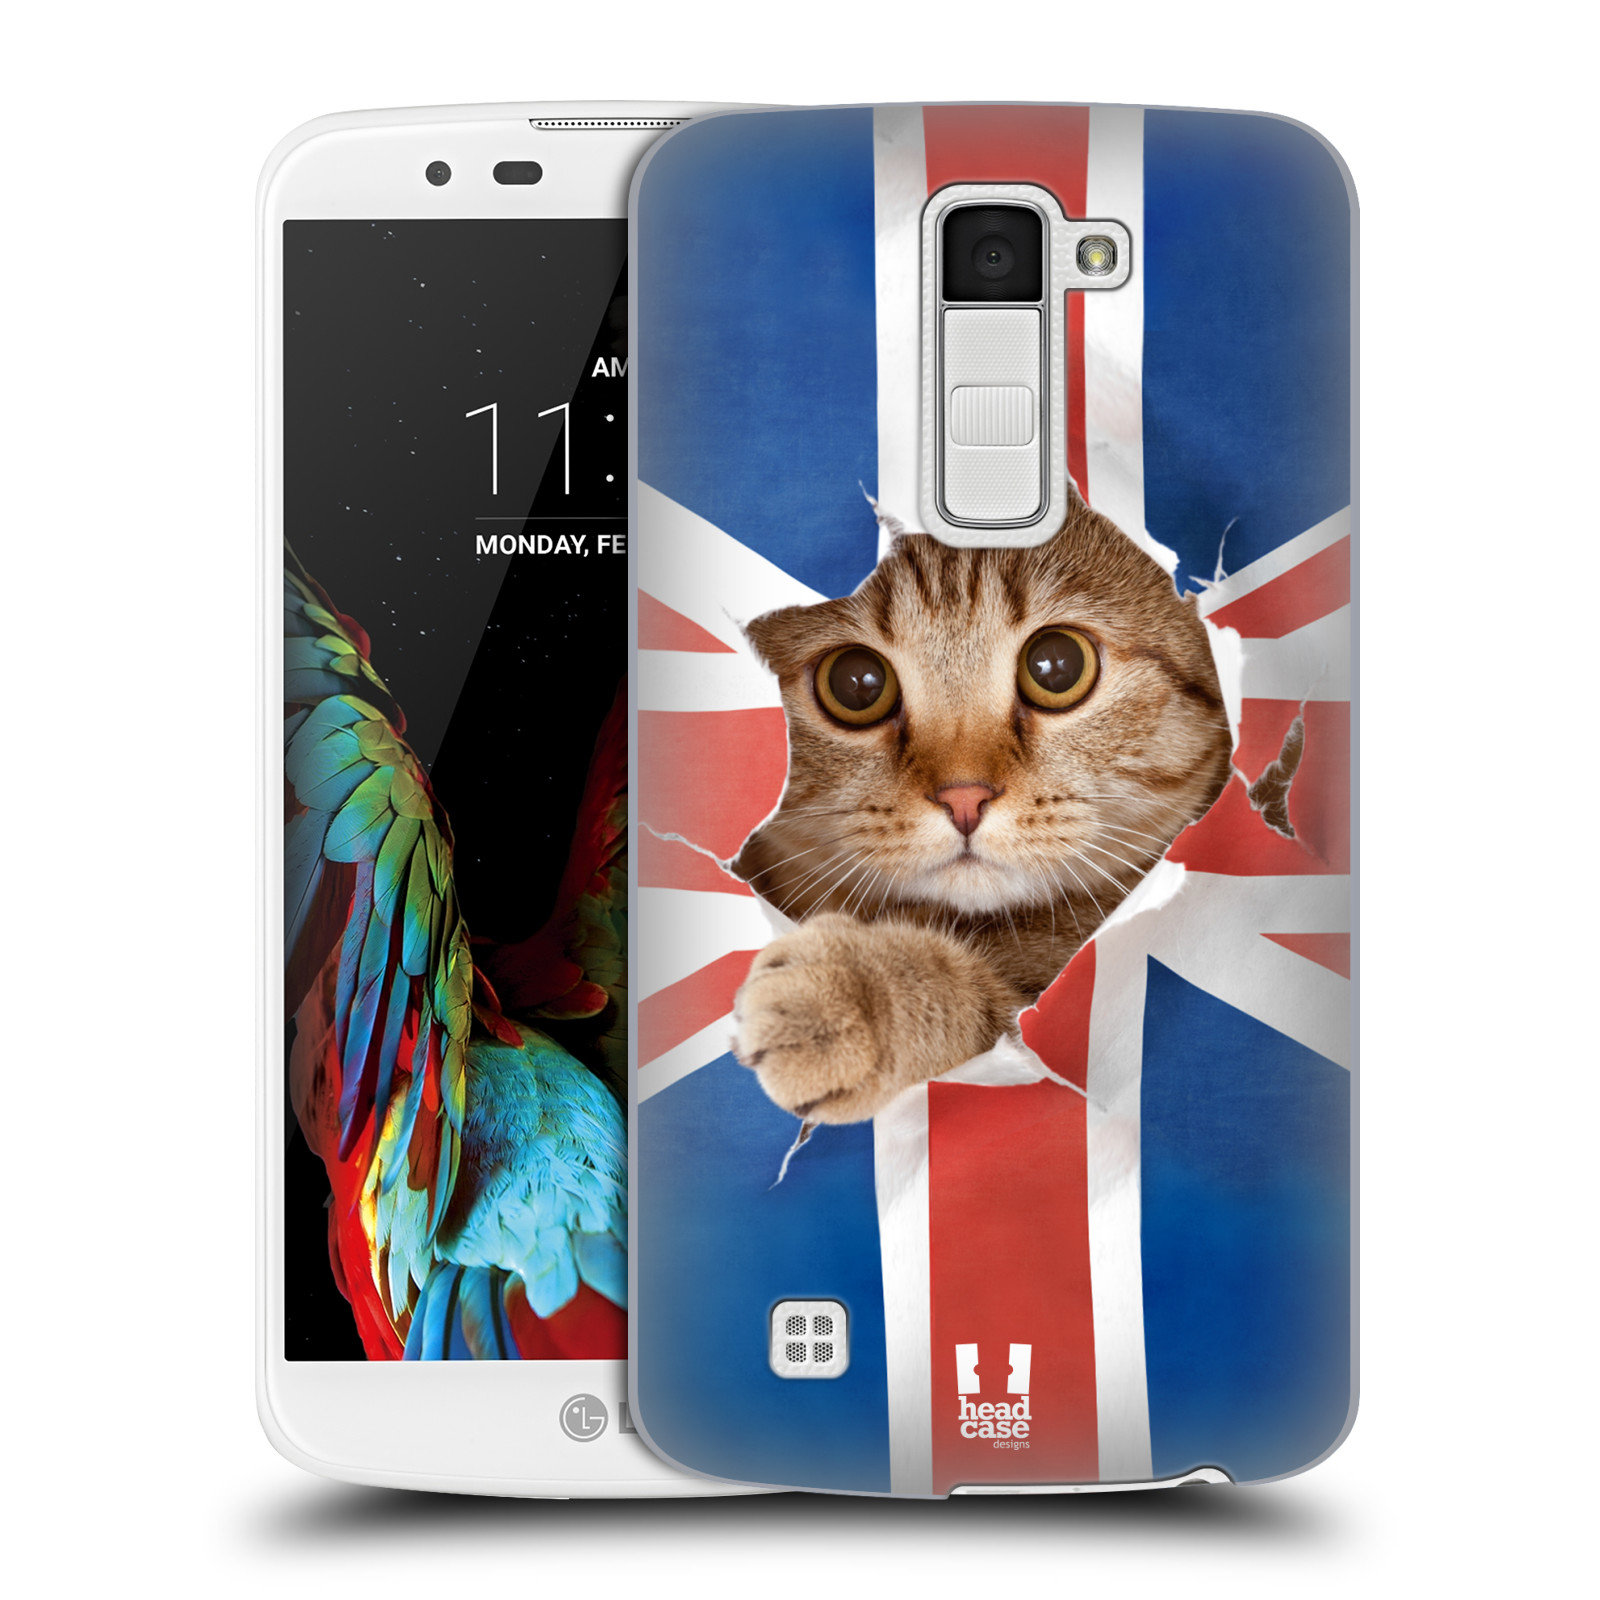 HEAD CASE plastový obal na mobil LG K10 vzor Legrační zvířátka kočička a Velká Británie vlajka